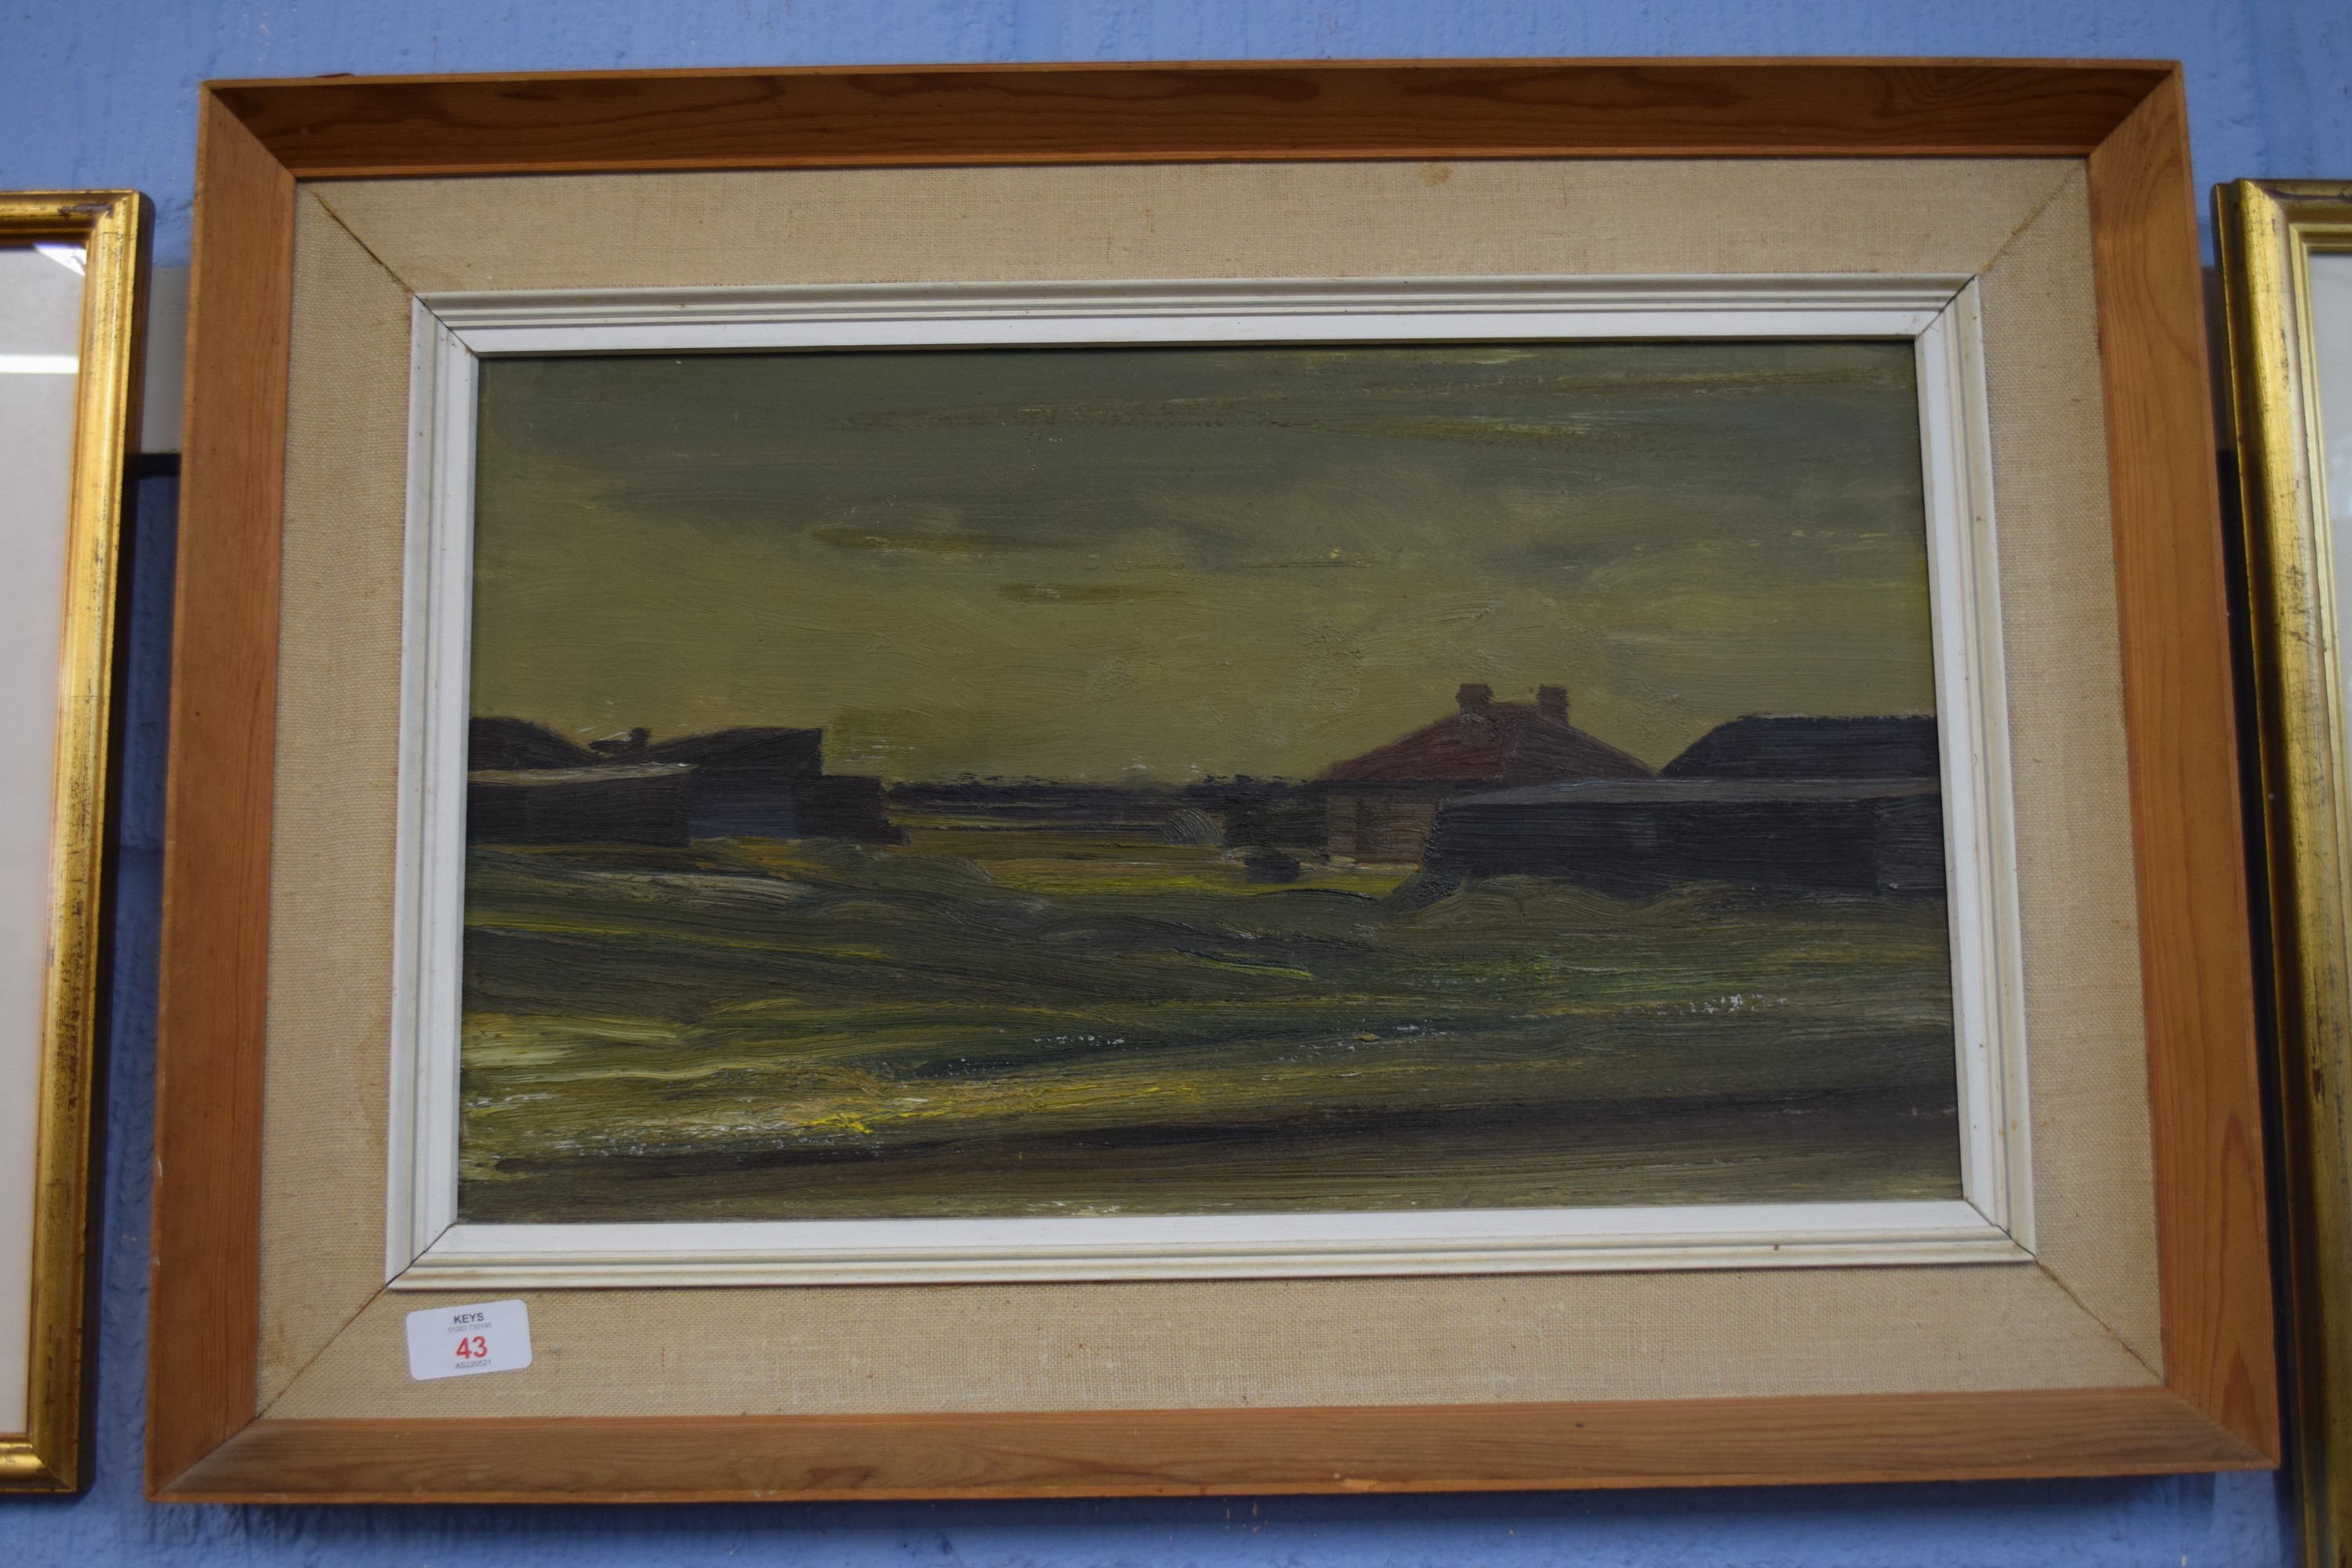 Circa 1960s English School, Oil on board, abstract Landscape, 28cm x 47cm